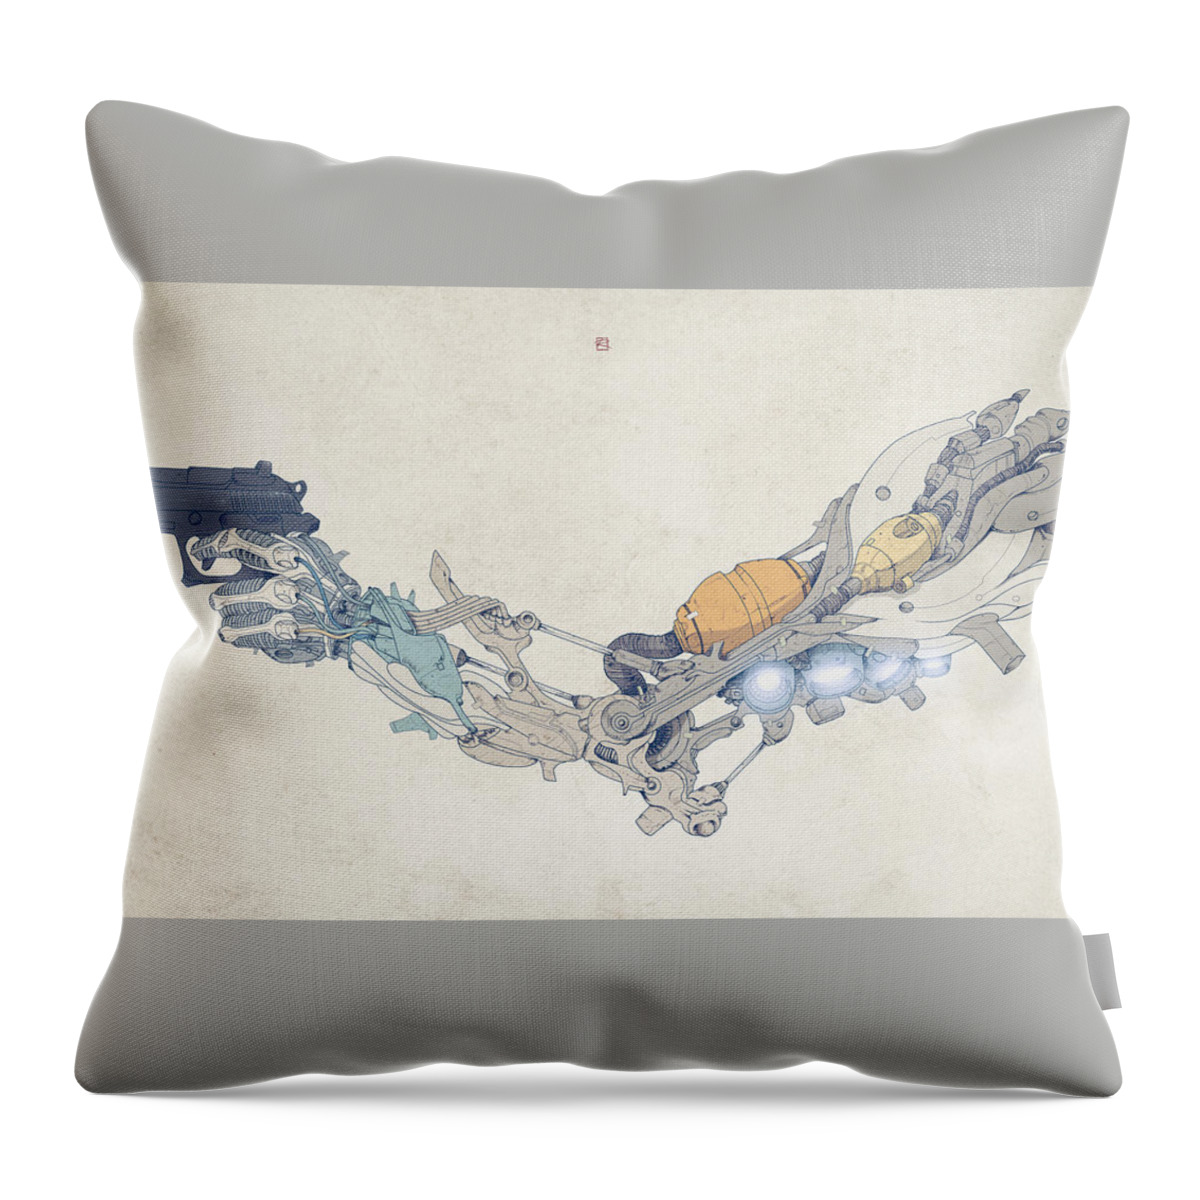 Robot Throw Pillow featuring the digital art Robot #5 by Maye Loeser